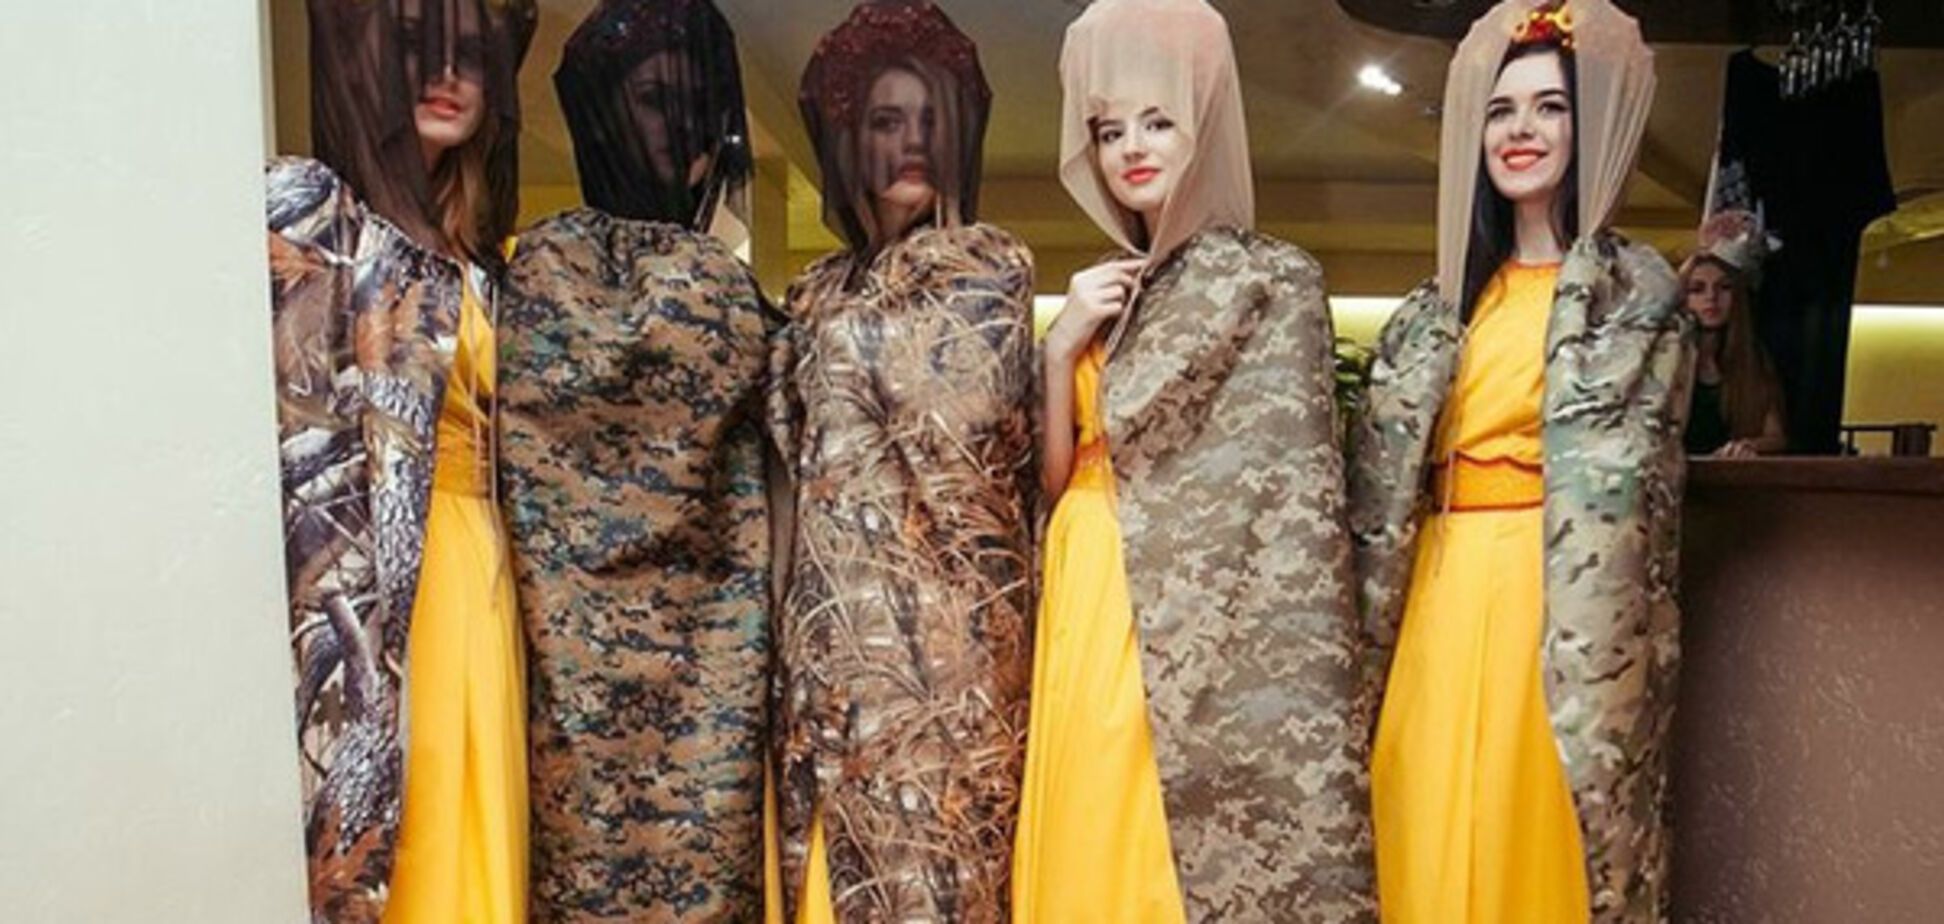 Cети рассмешил странный показ мод в Украине